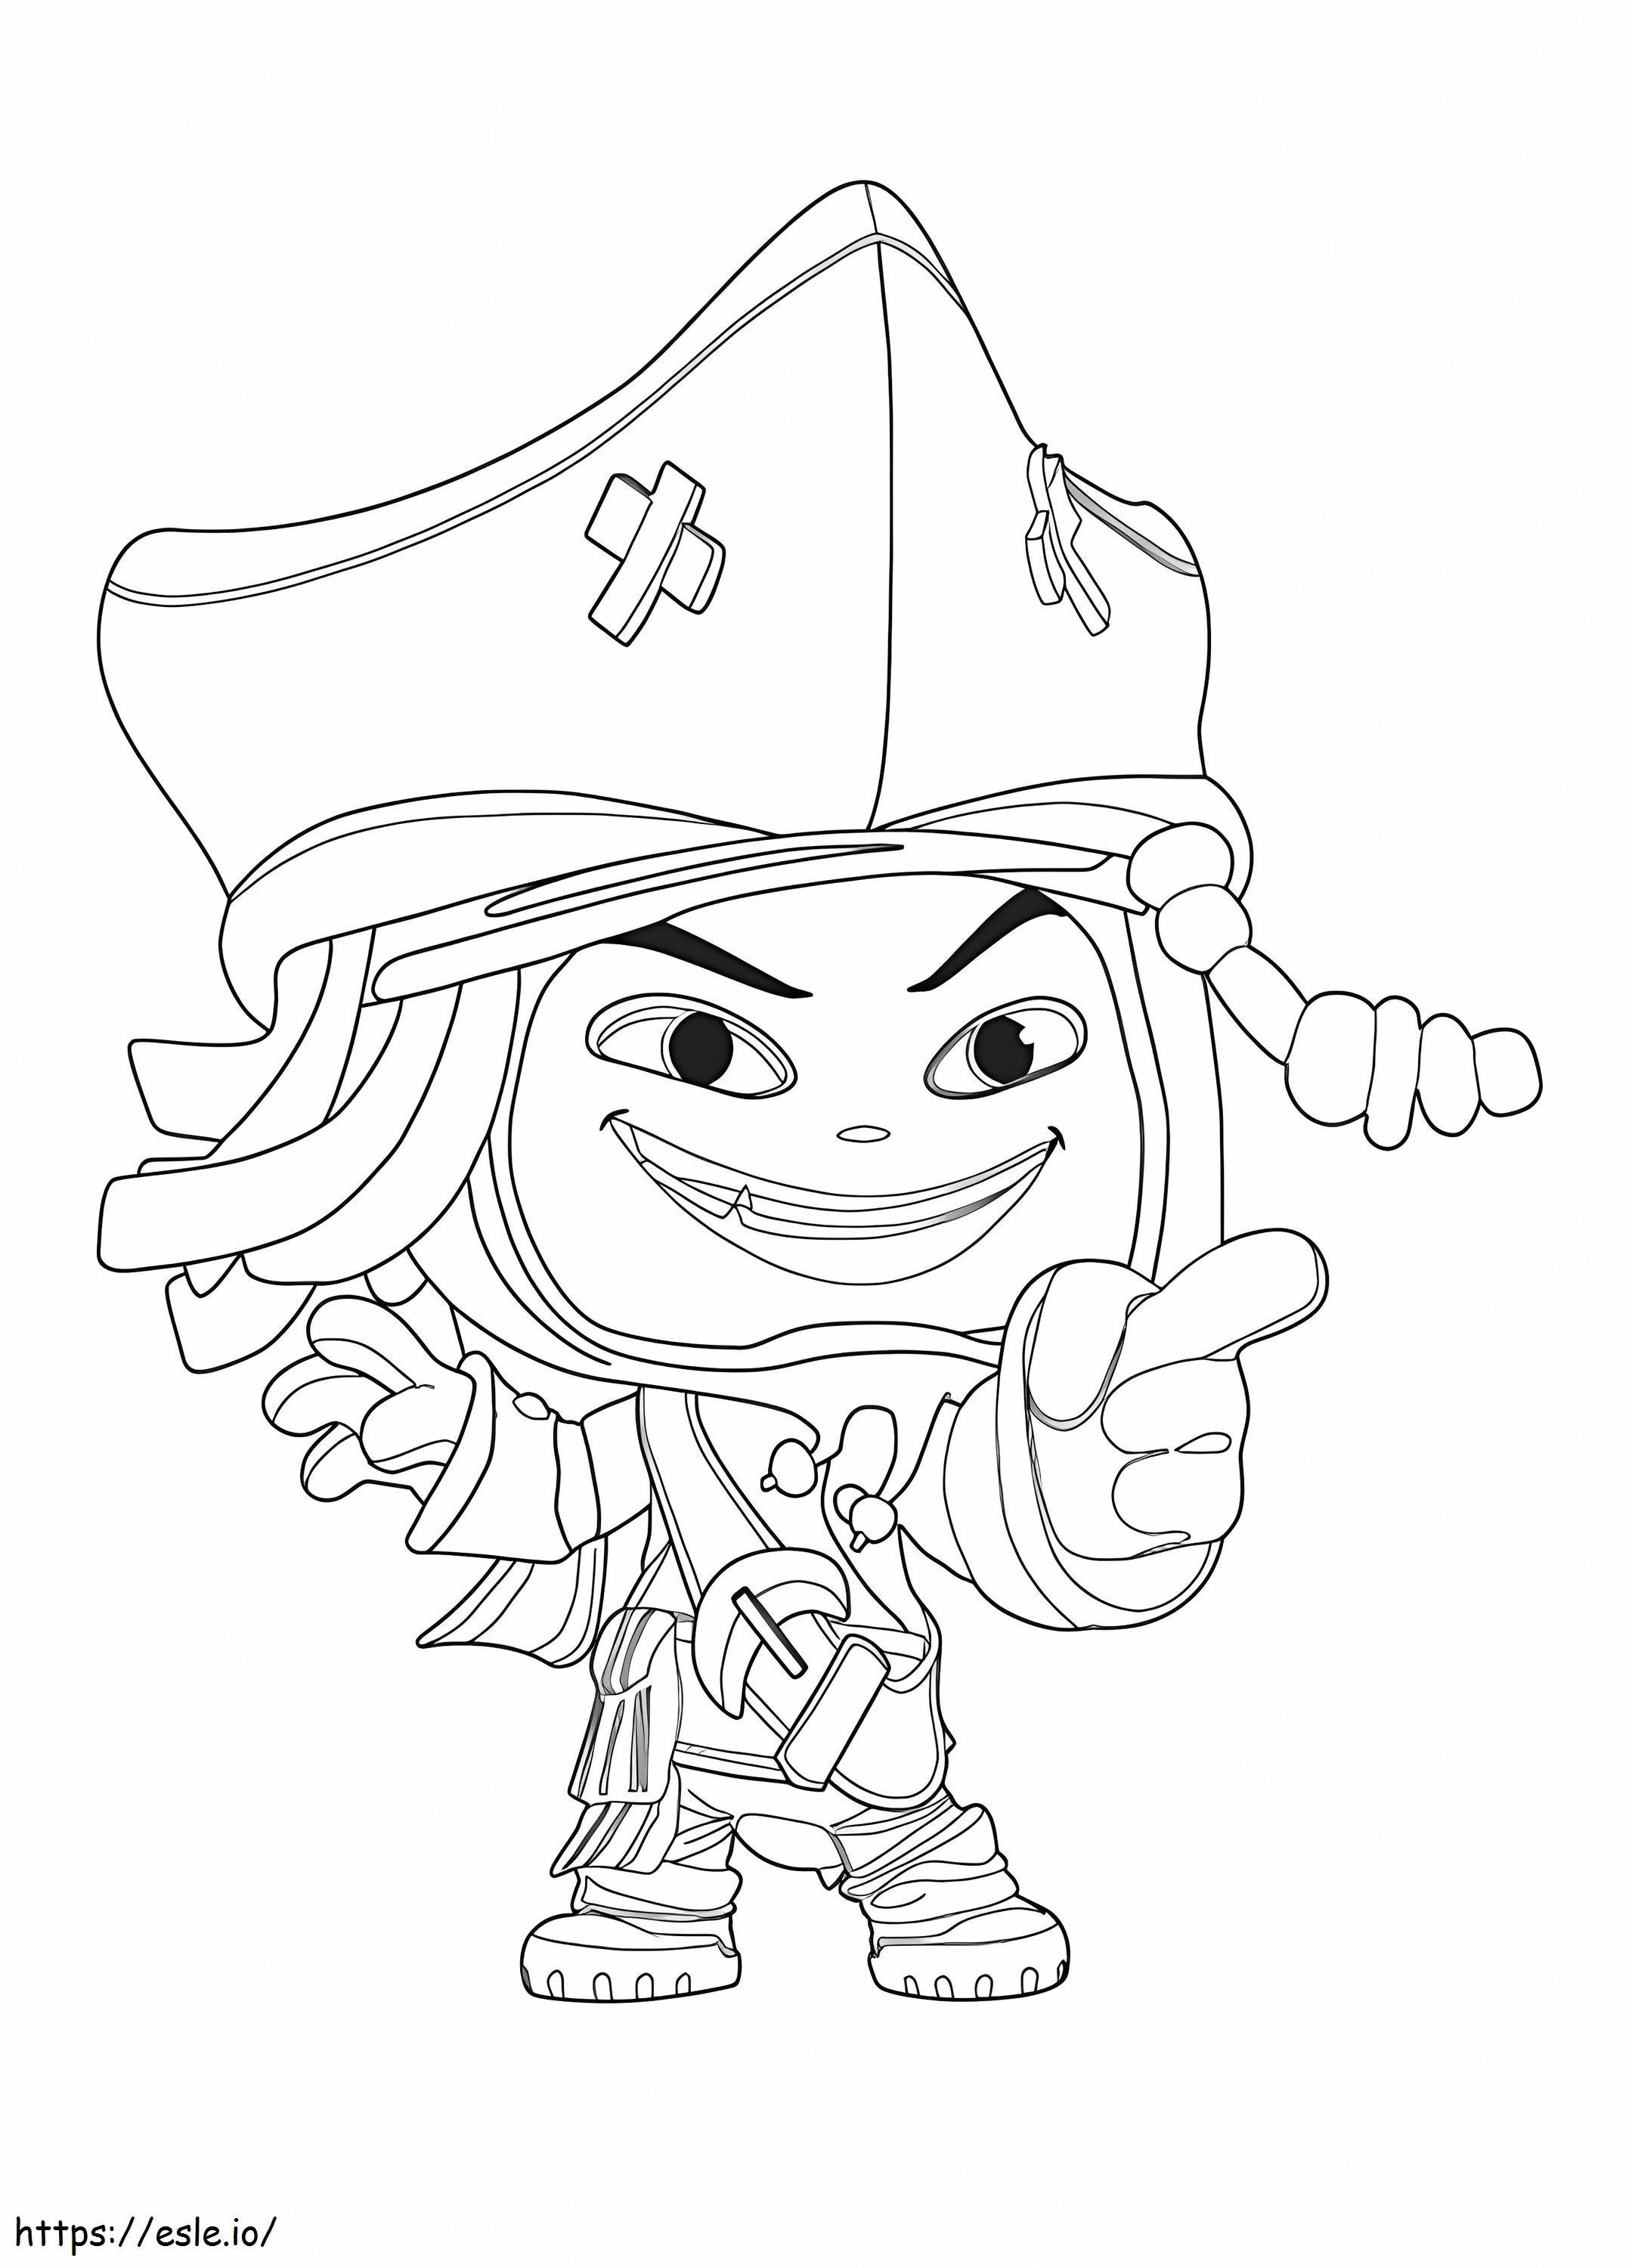 Jack Sparrow din universul Disney de colorat